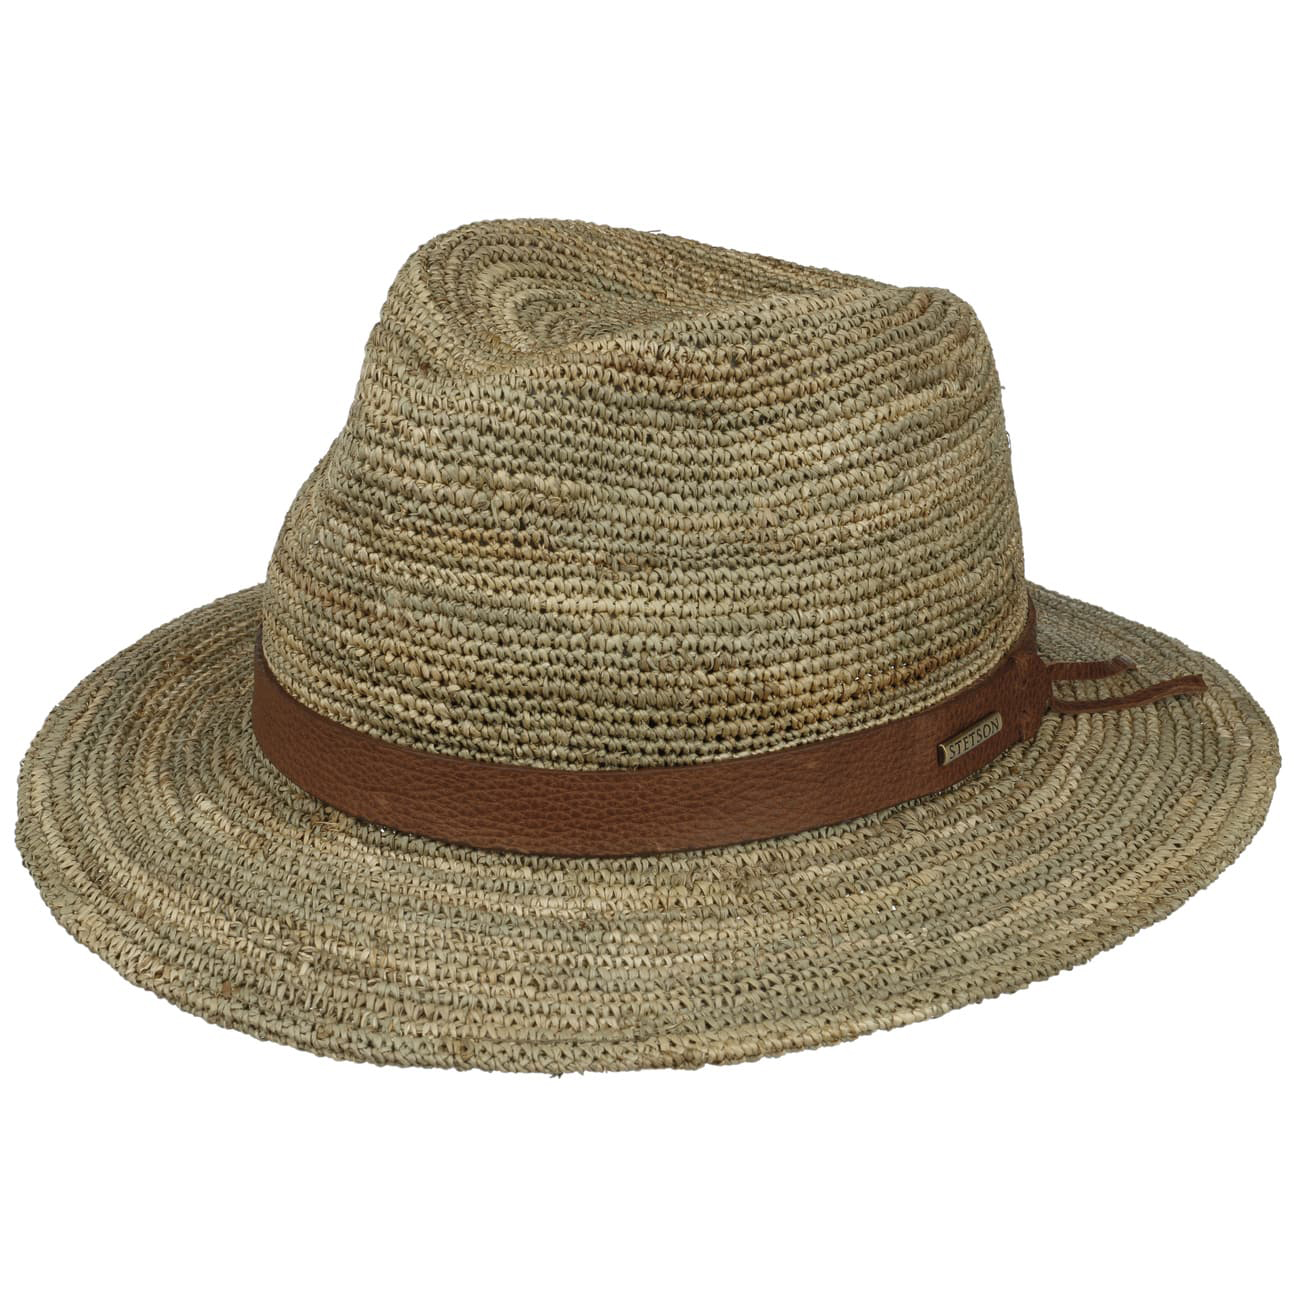 Stetson - Crochet Seagrass Traveller Hat - Natural